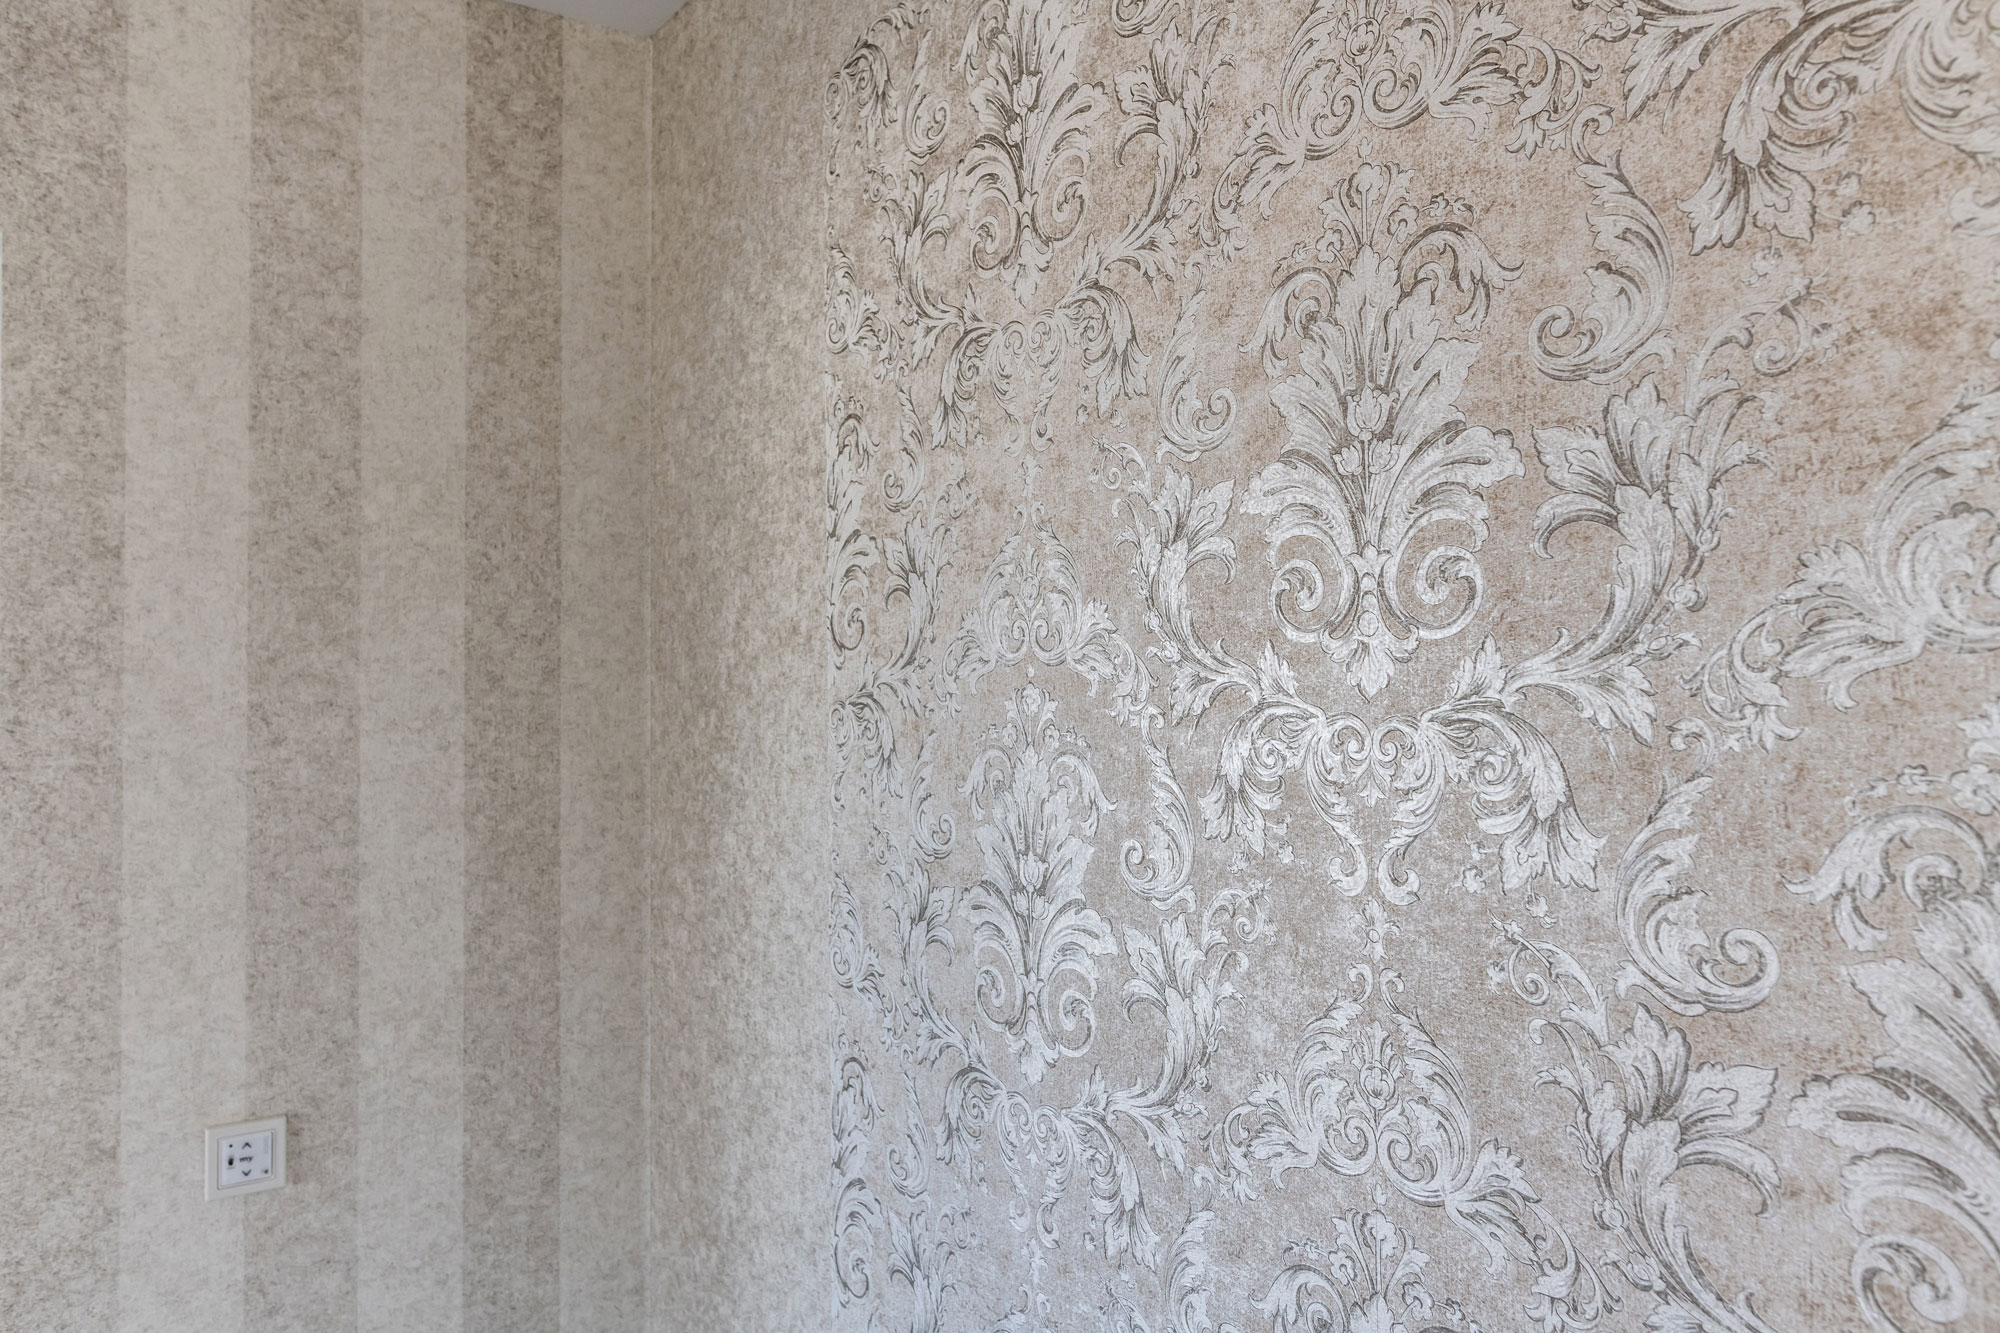 Klassische Ornamenttapete in weiß, silber und altrosa an einer Wohnzimmerwand.